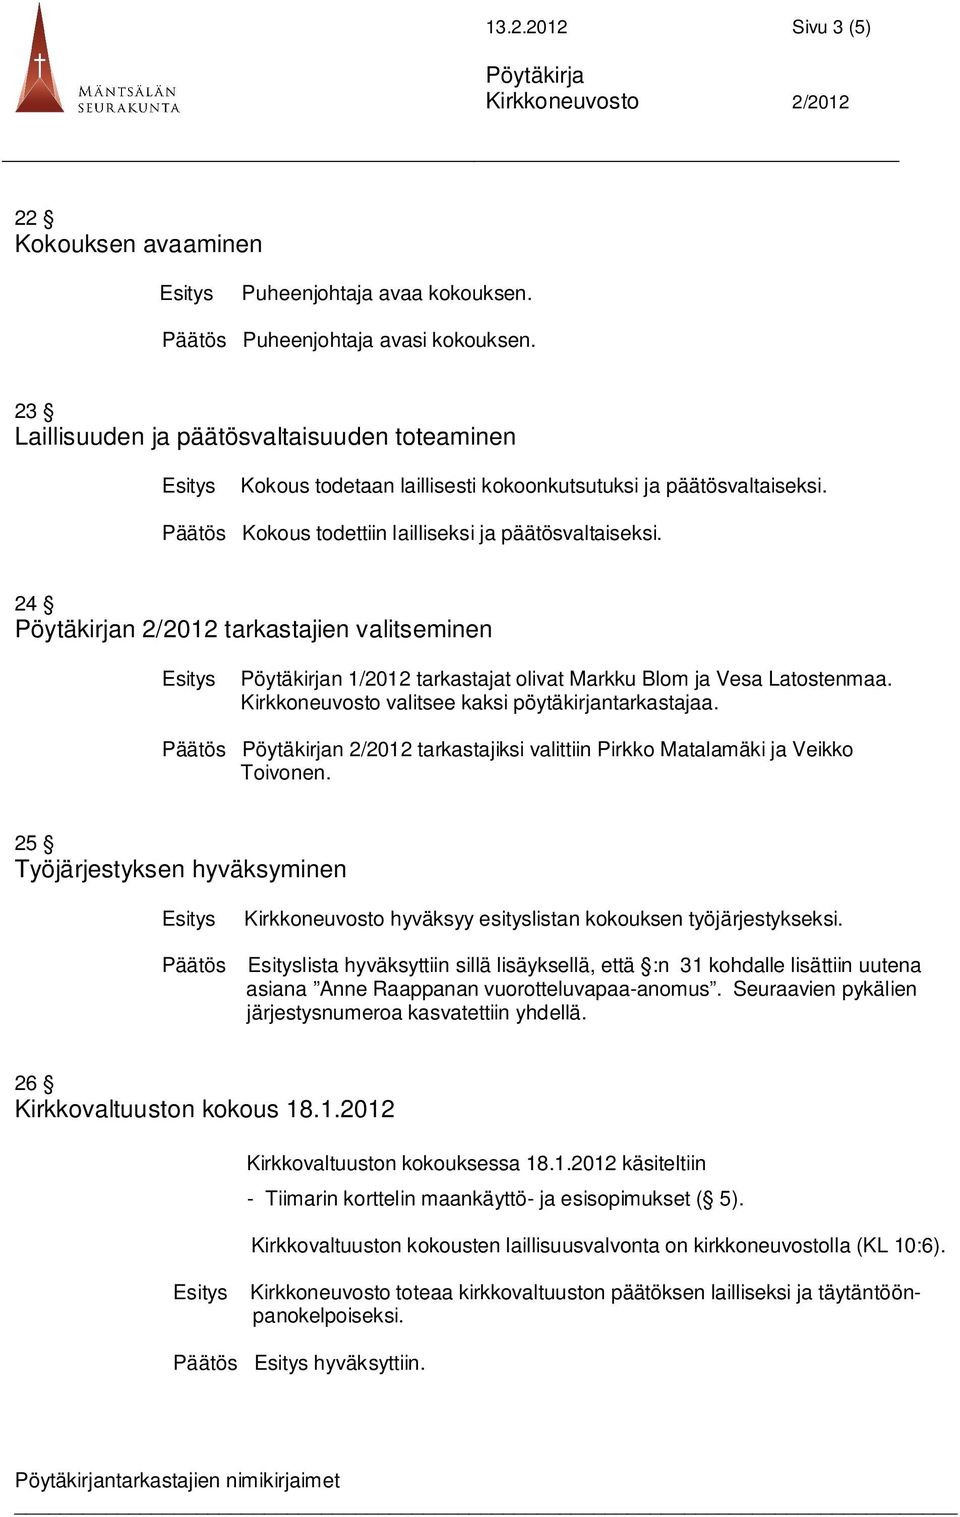 24 n 2/2012 tarkastajien valitseminen n 1/2012 tarkastajat olivat Markku Blom ja Vesa Latostenmaa. Kirkkoneuvosto valitsee kaksi pöytäkirjantarkastajaa.